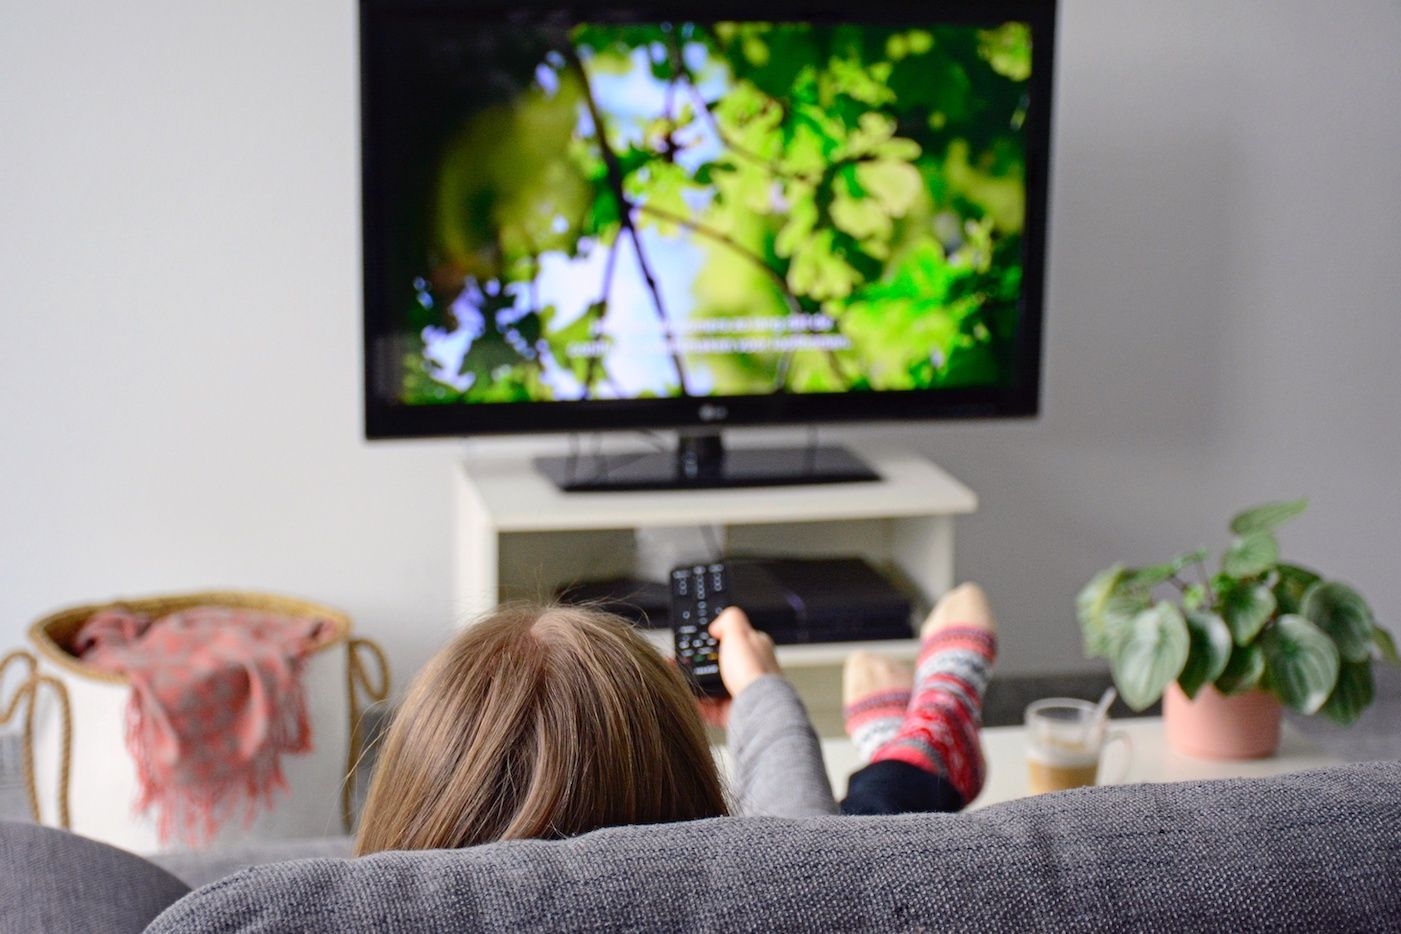 Kvinne i sofa foran TV med fjernkontroll i hånda og teksting på TVen